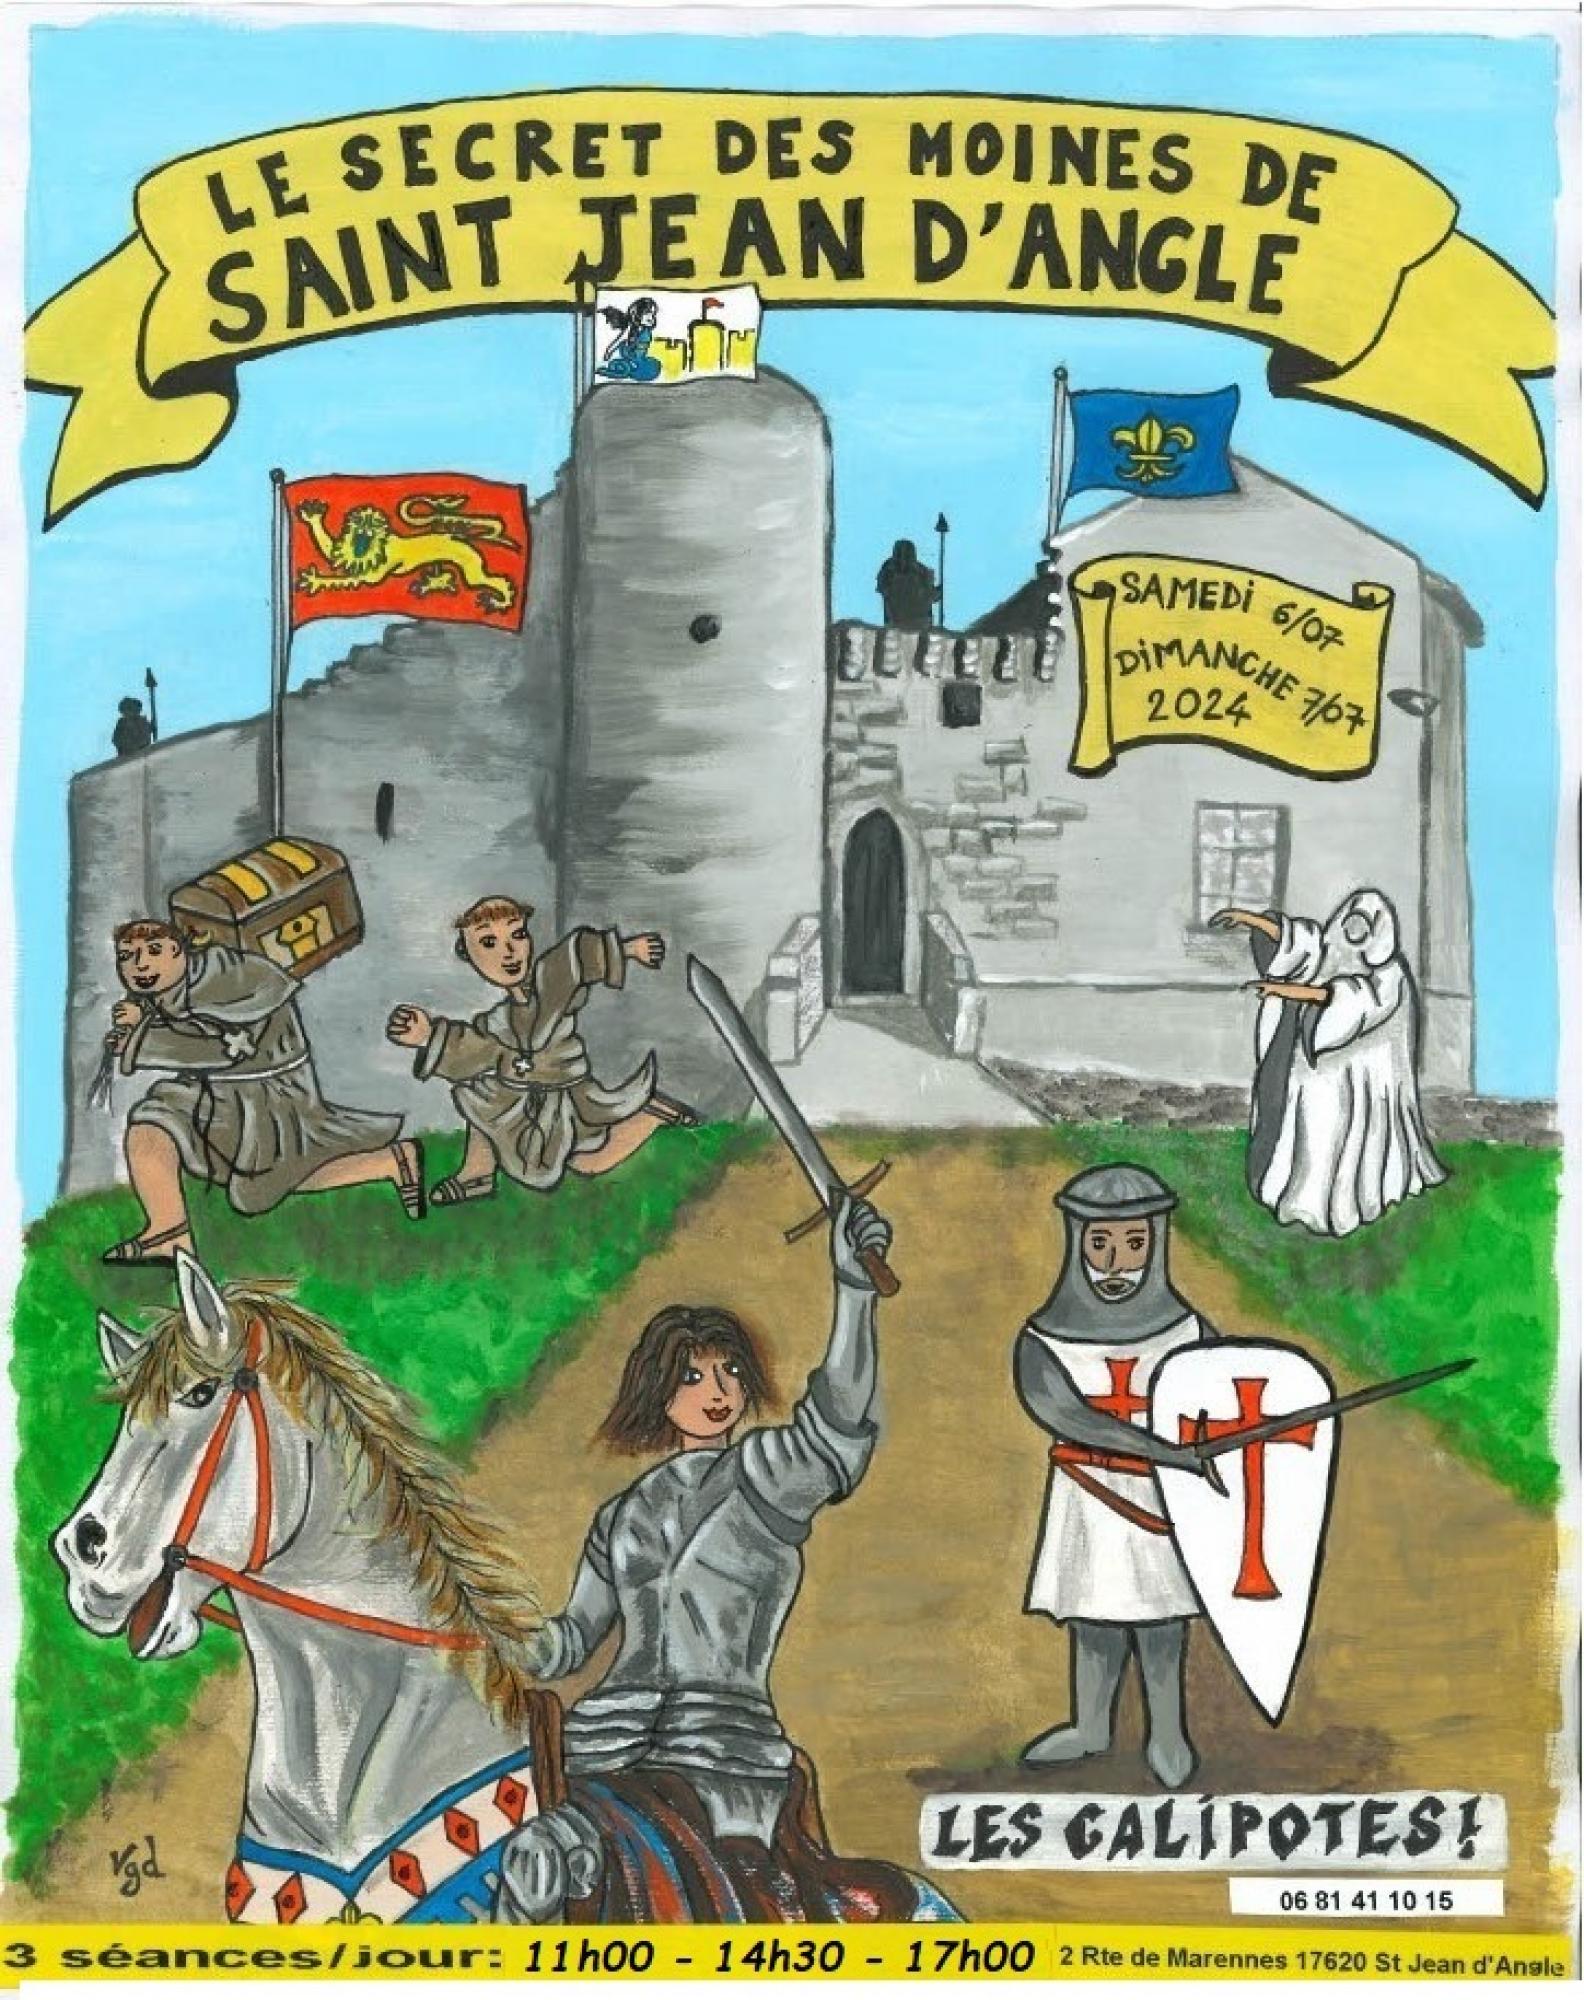 Site en scène: The secret of Saint Jean d'Angle monks at fairy Mélusine castel